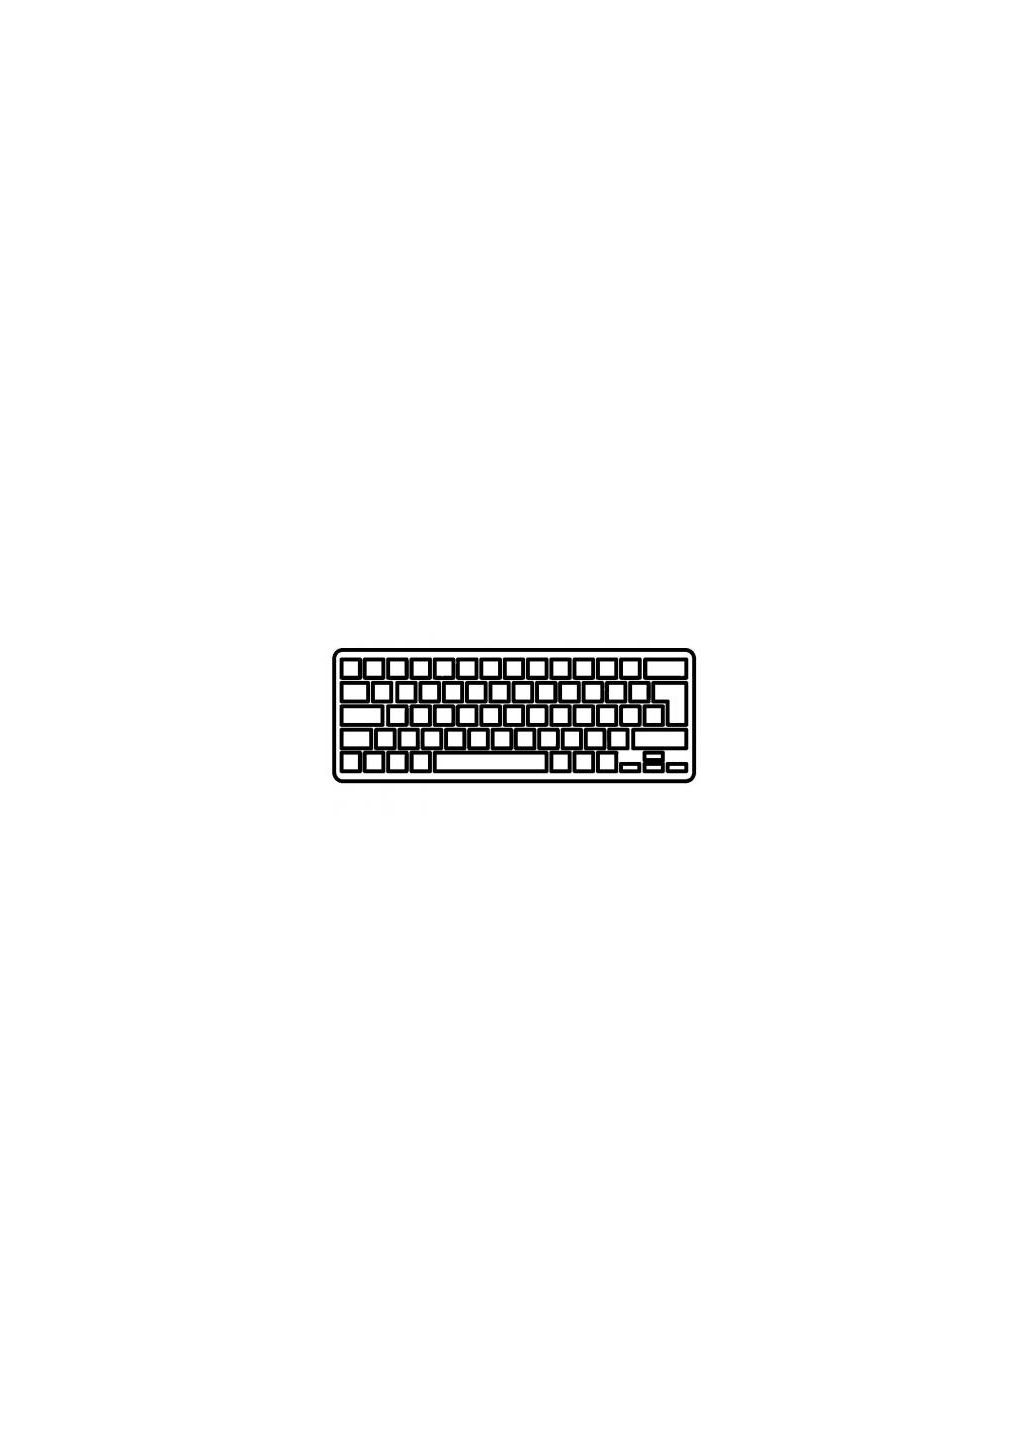 Клавиатура ноутбука UA (A43704) Acer lt21/lt28 aspire one 531/532/532h/d255/d260 черная (276706604)